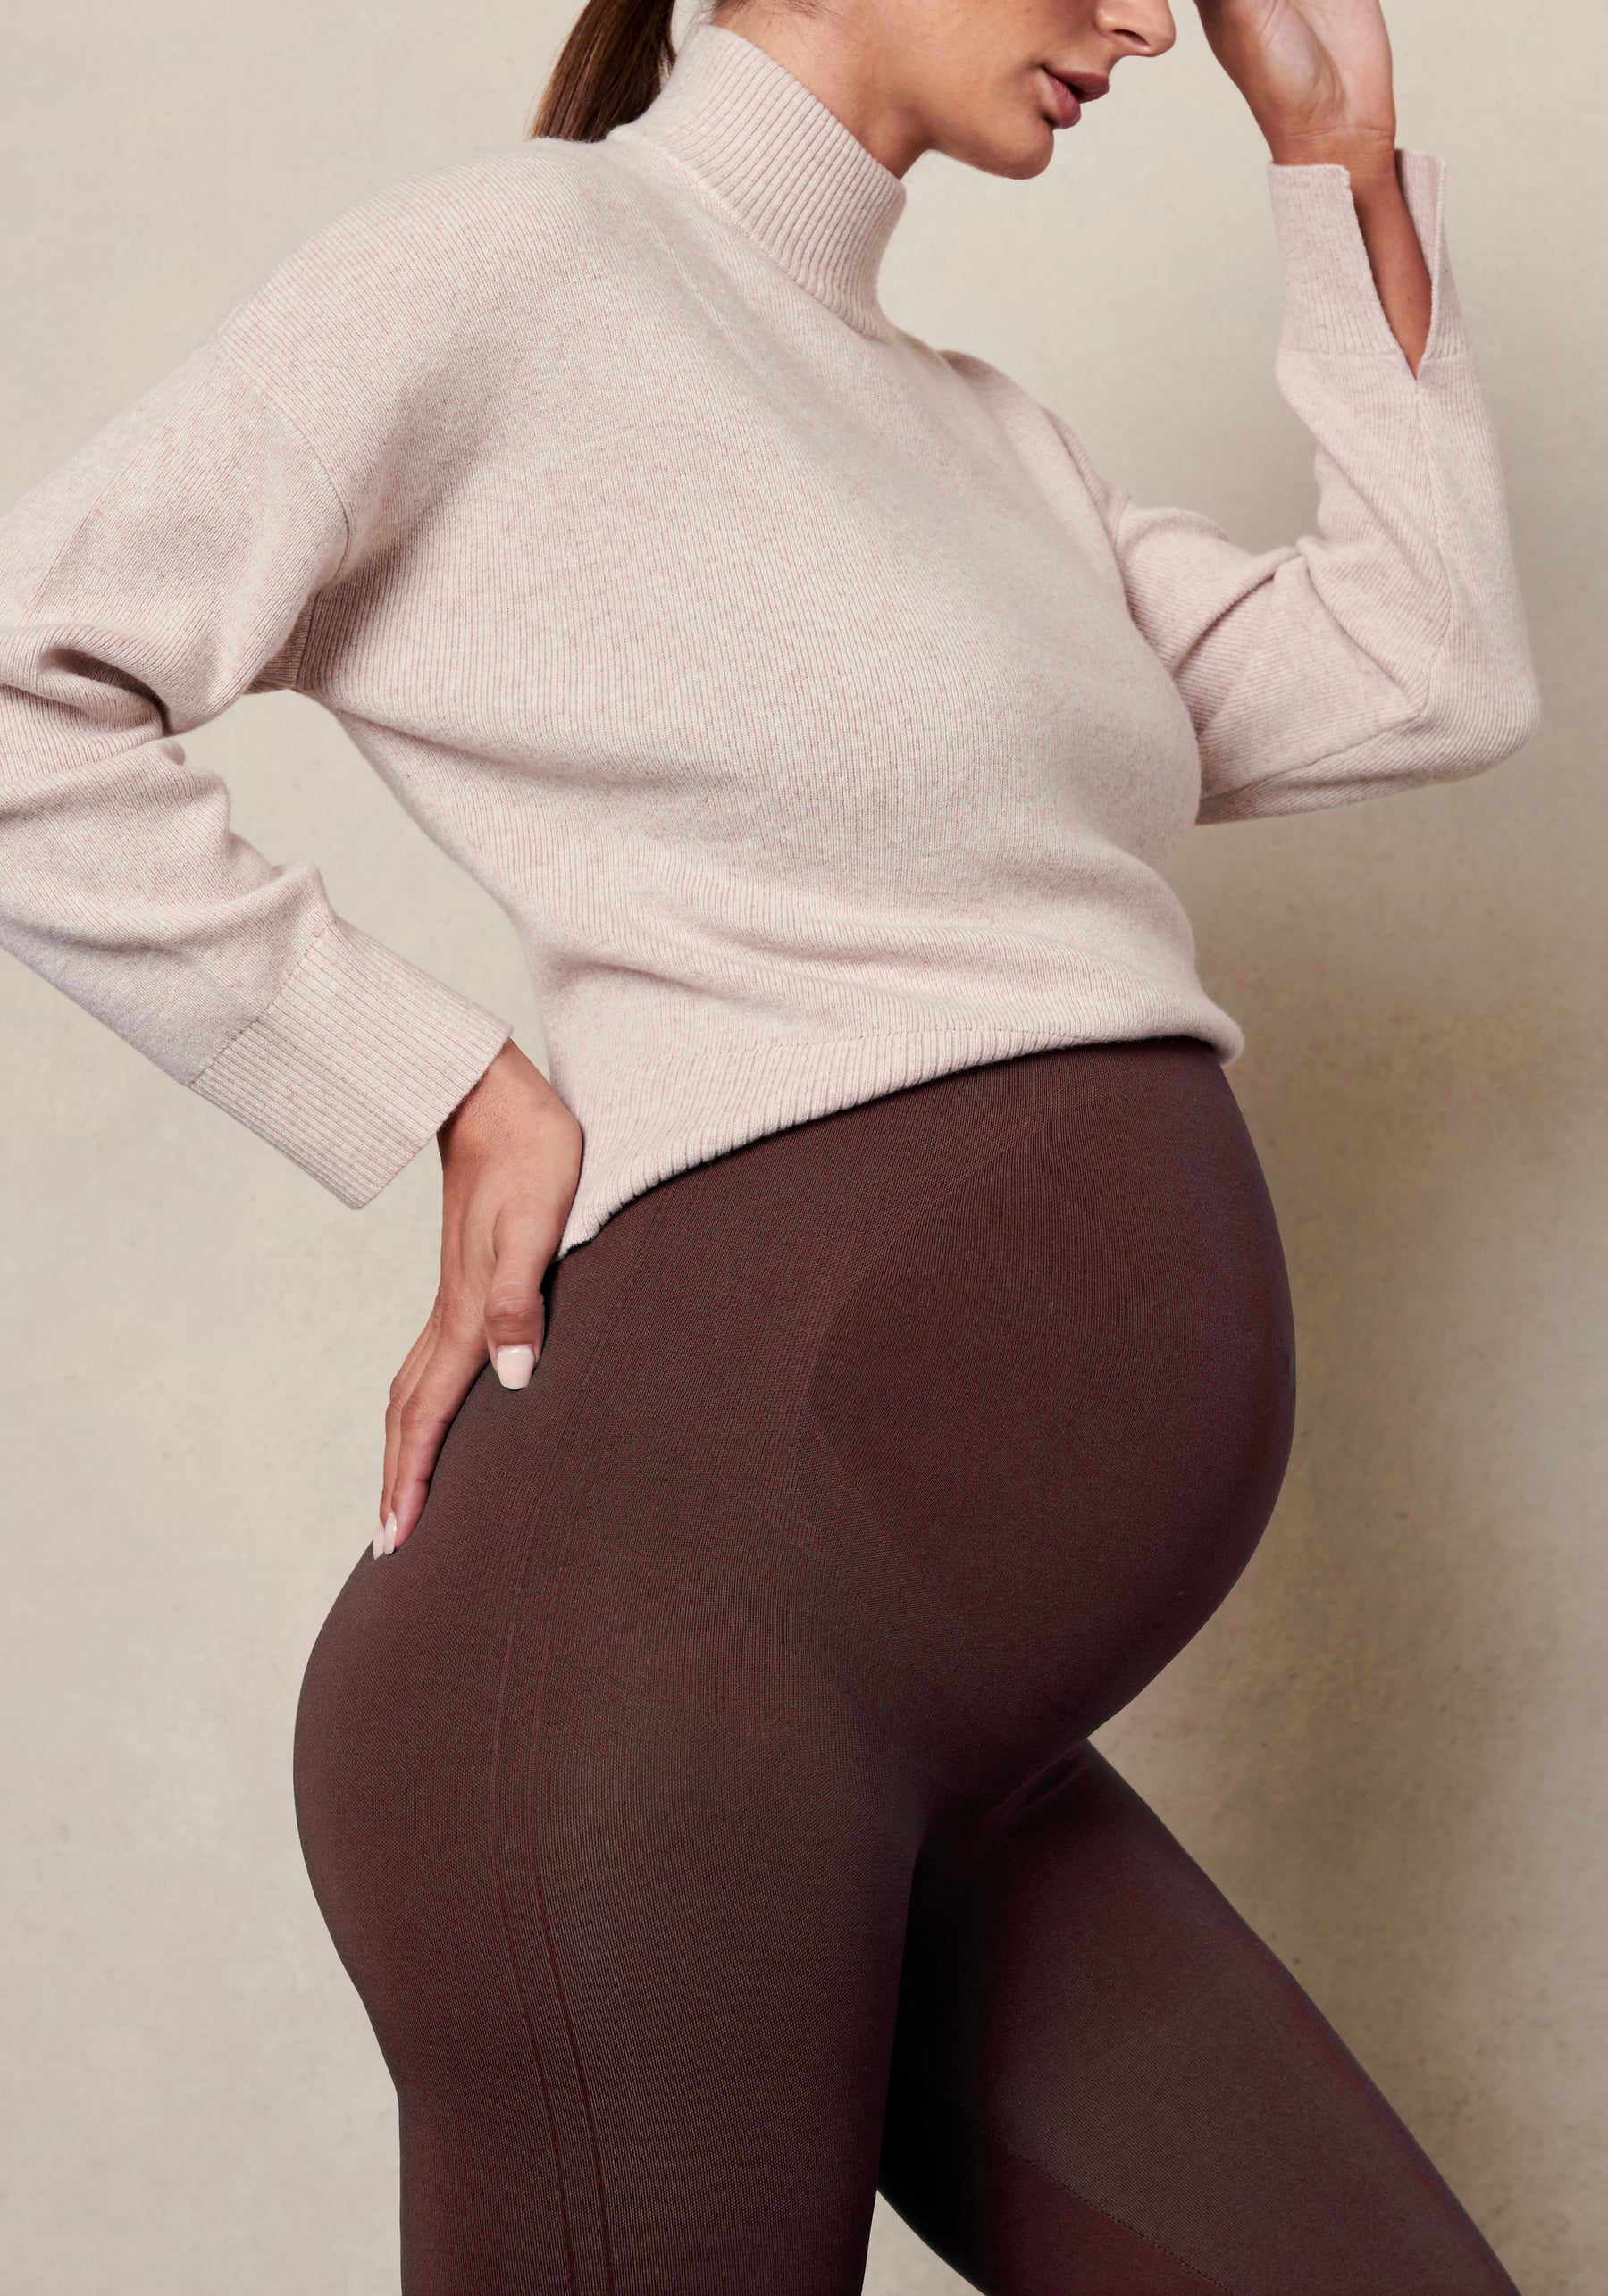 Stylish And Designer wholesale maternity leggings –